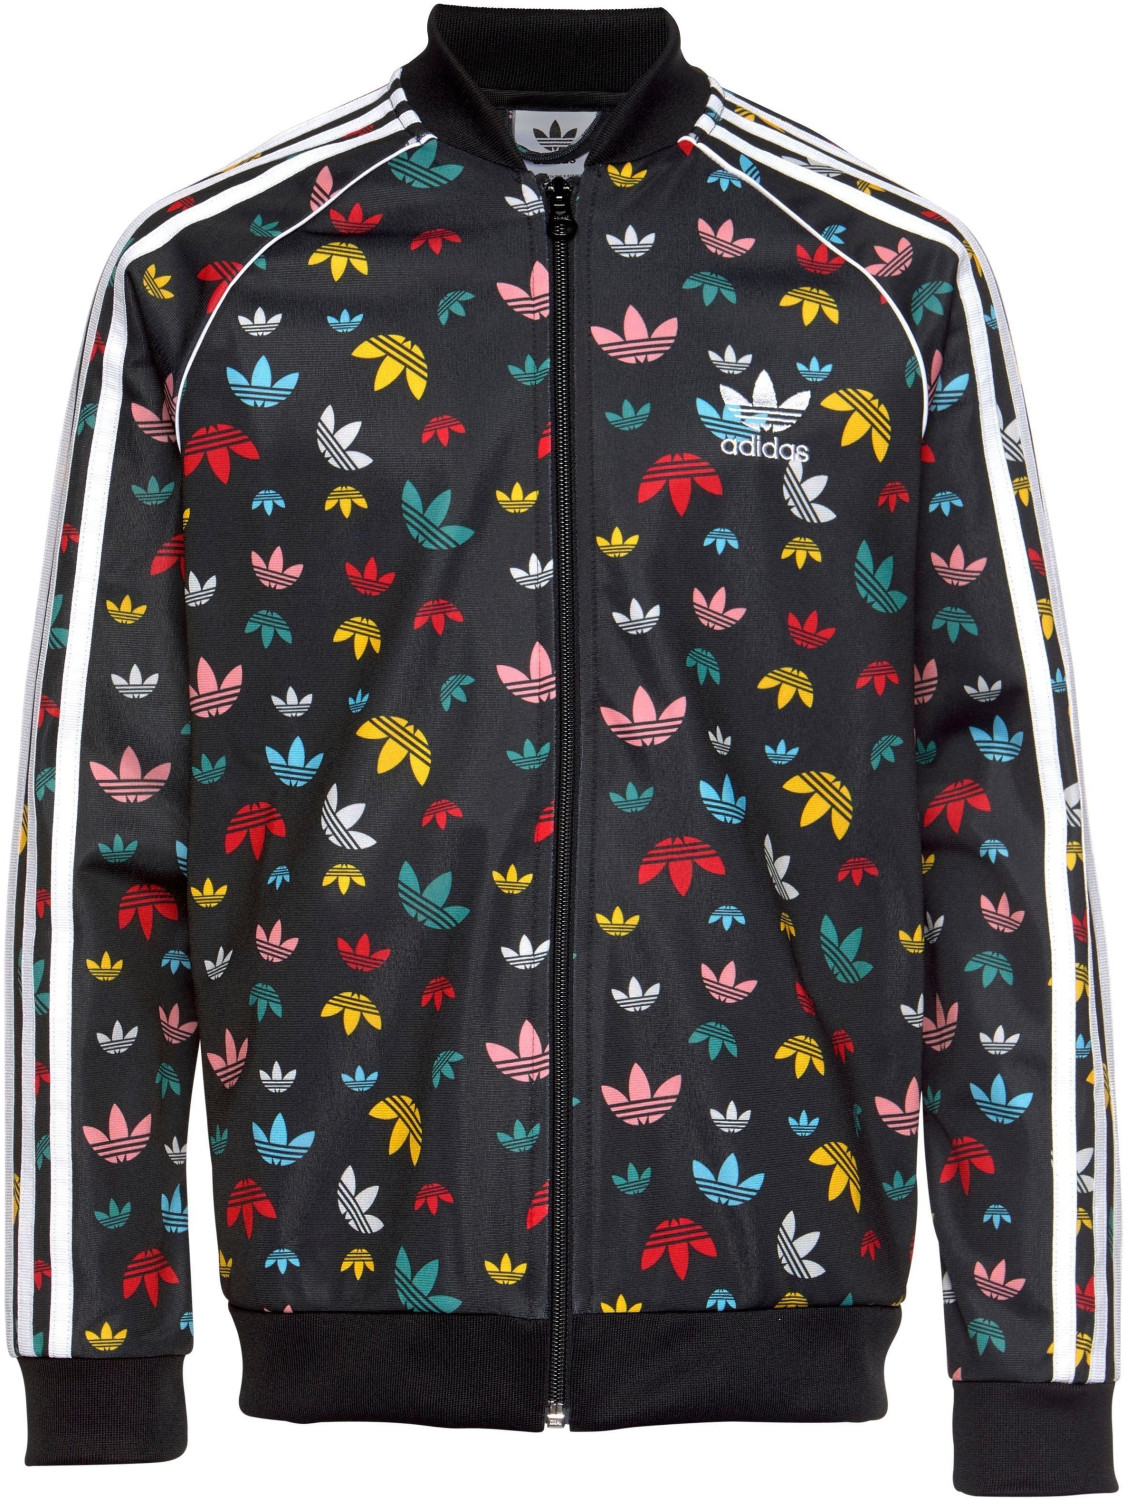 Adidas Kids SST Originals Jacket